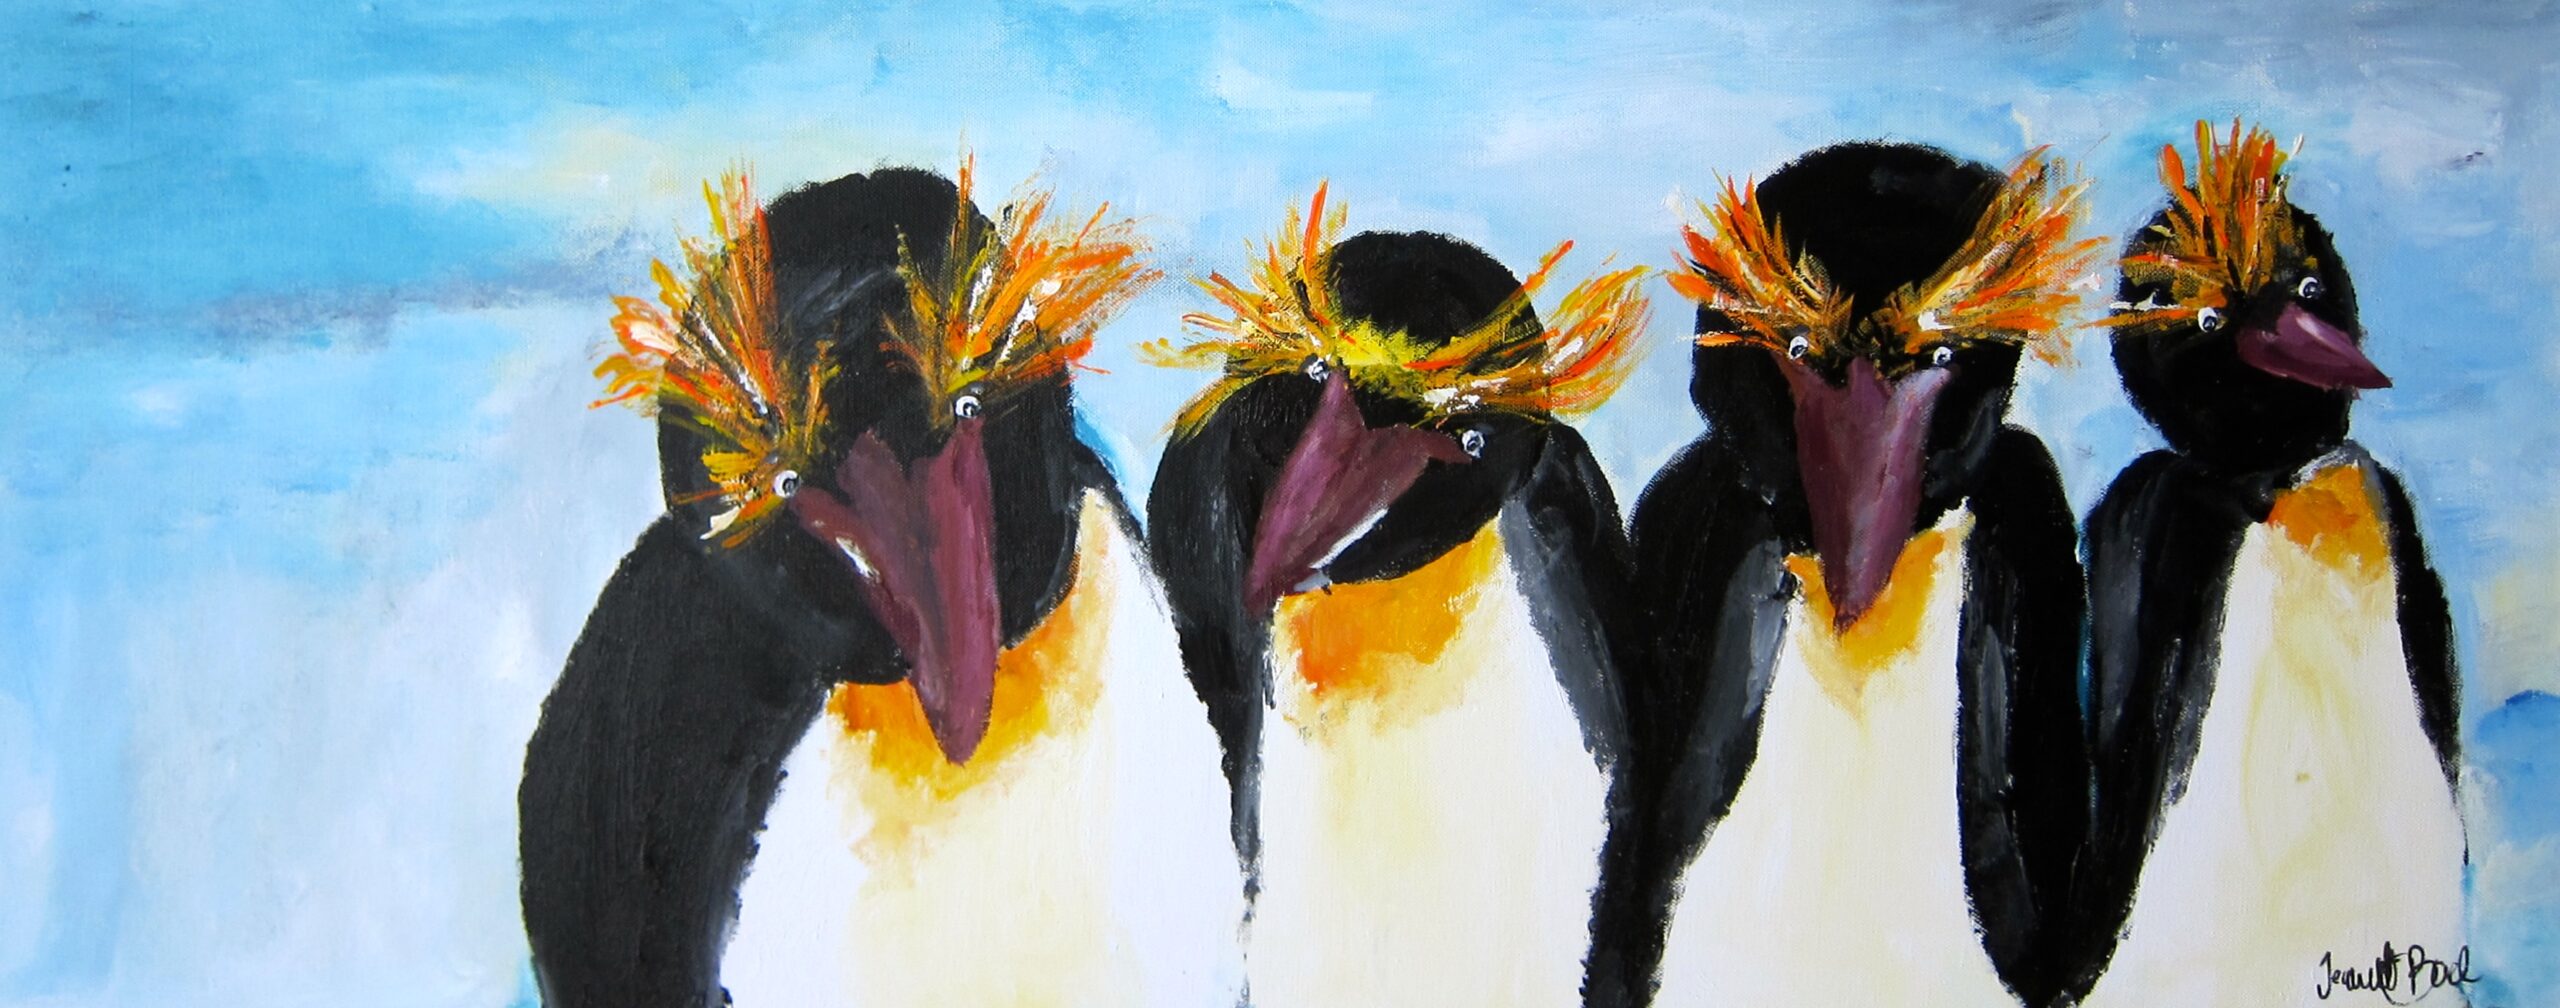 Maleri pingviner